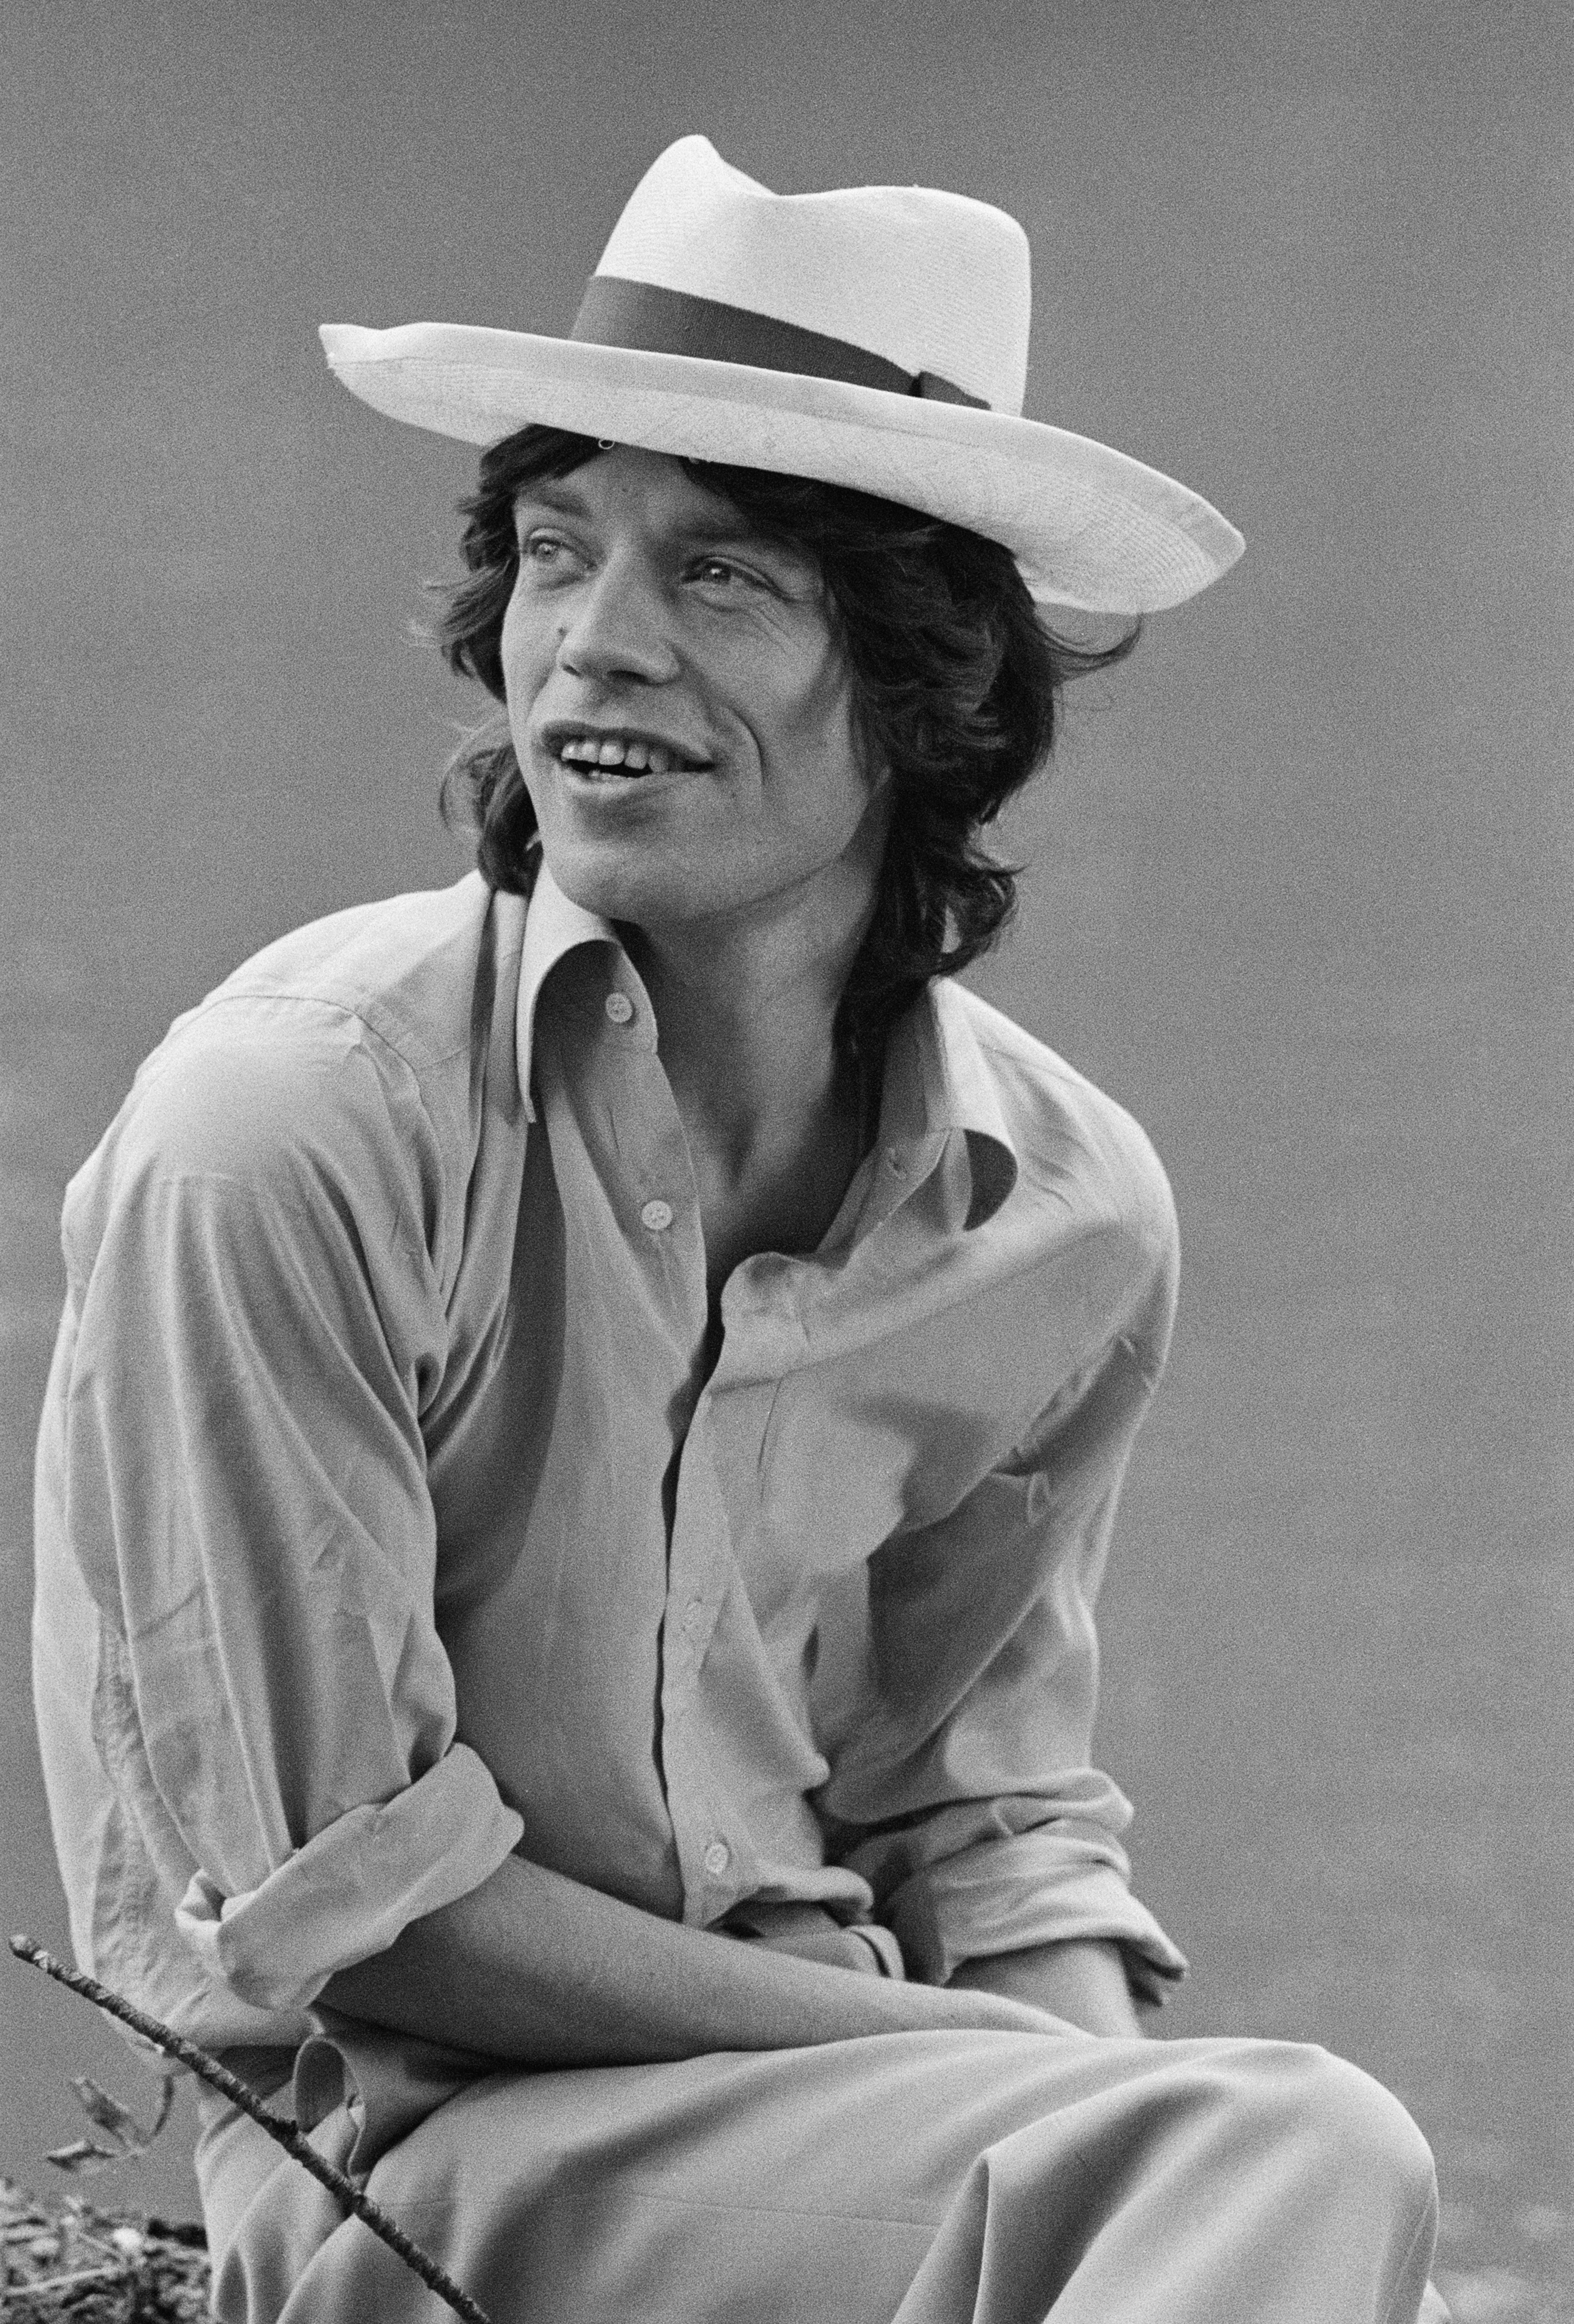 Le chanteur Mick Jagger avant la première nuit du tour du monde européen 1973 des Rolling Stones, le 1er septembre 1973. | Source: Getty Images